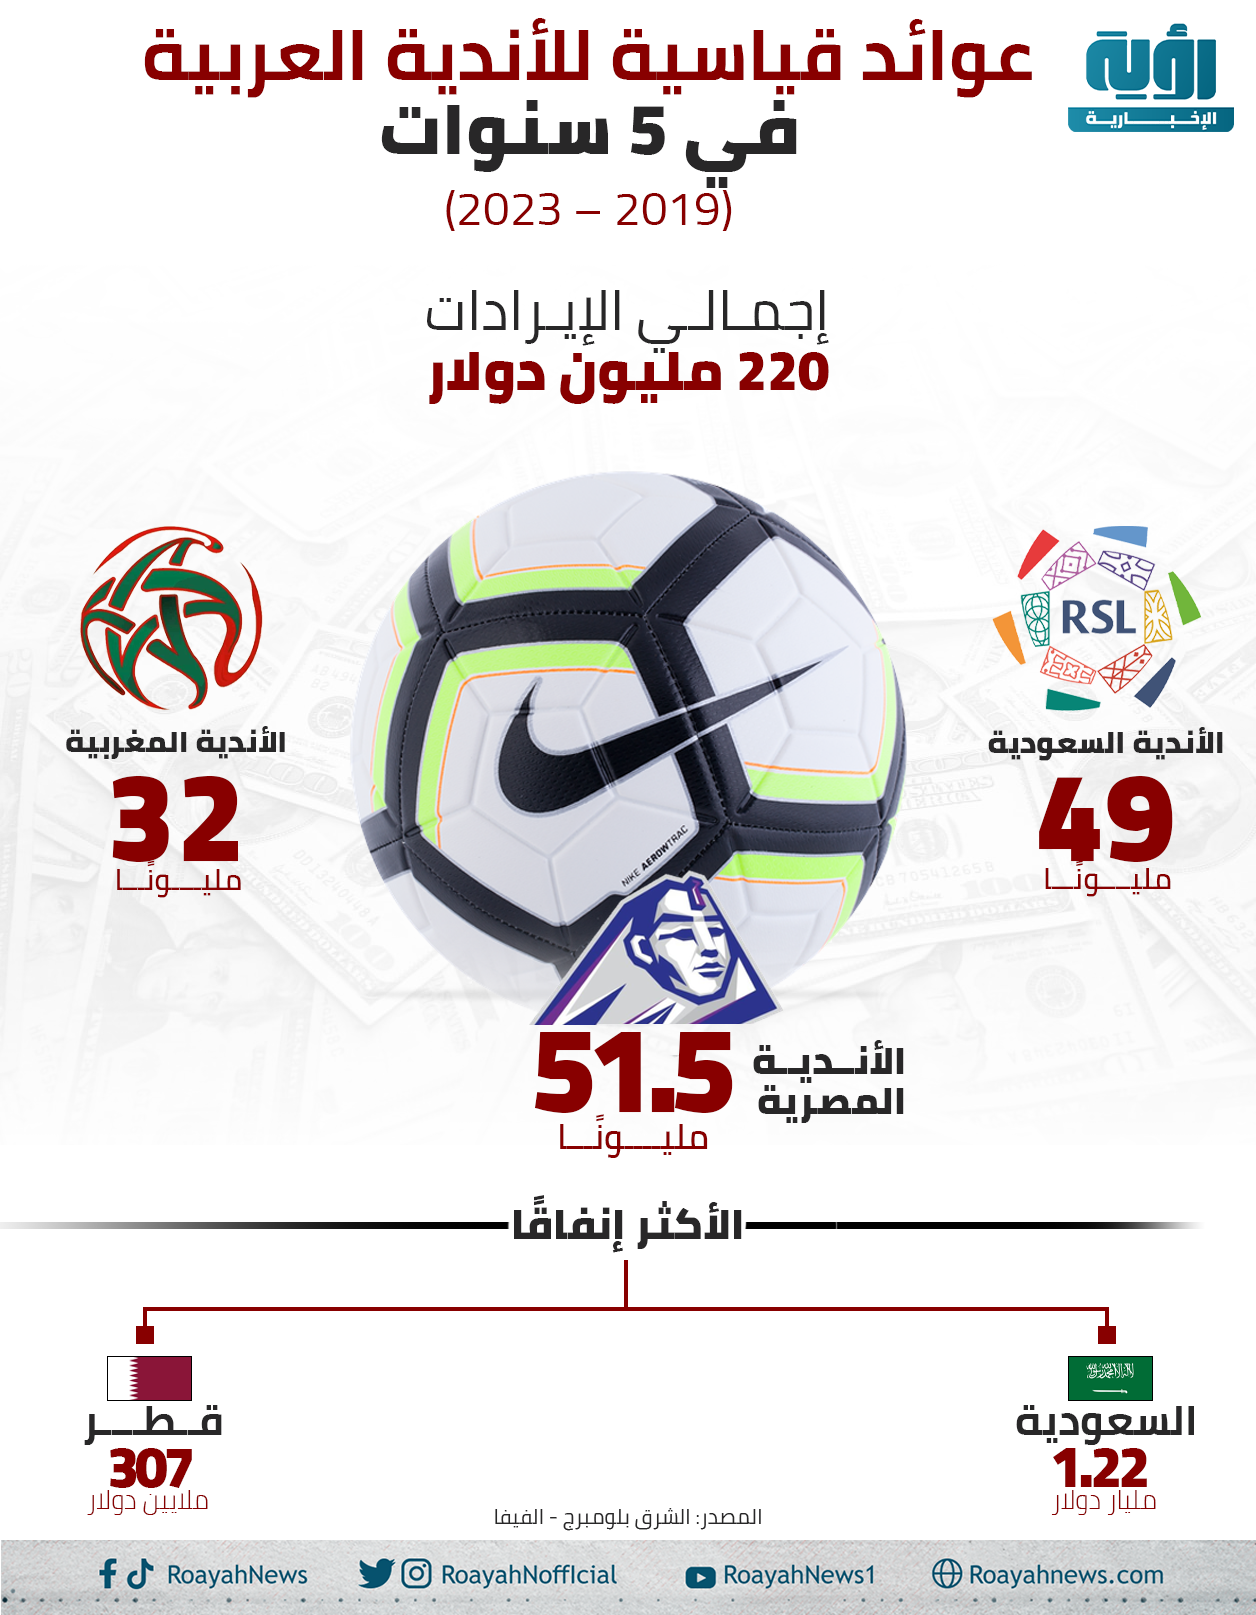 عوائد قياسية للأندية العربية في 5 سنوات